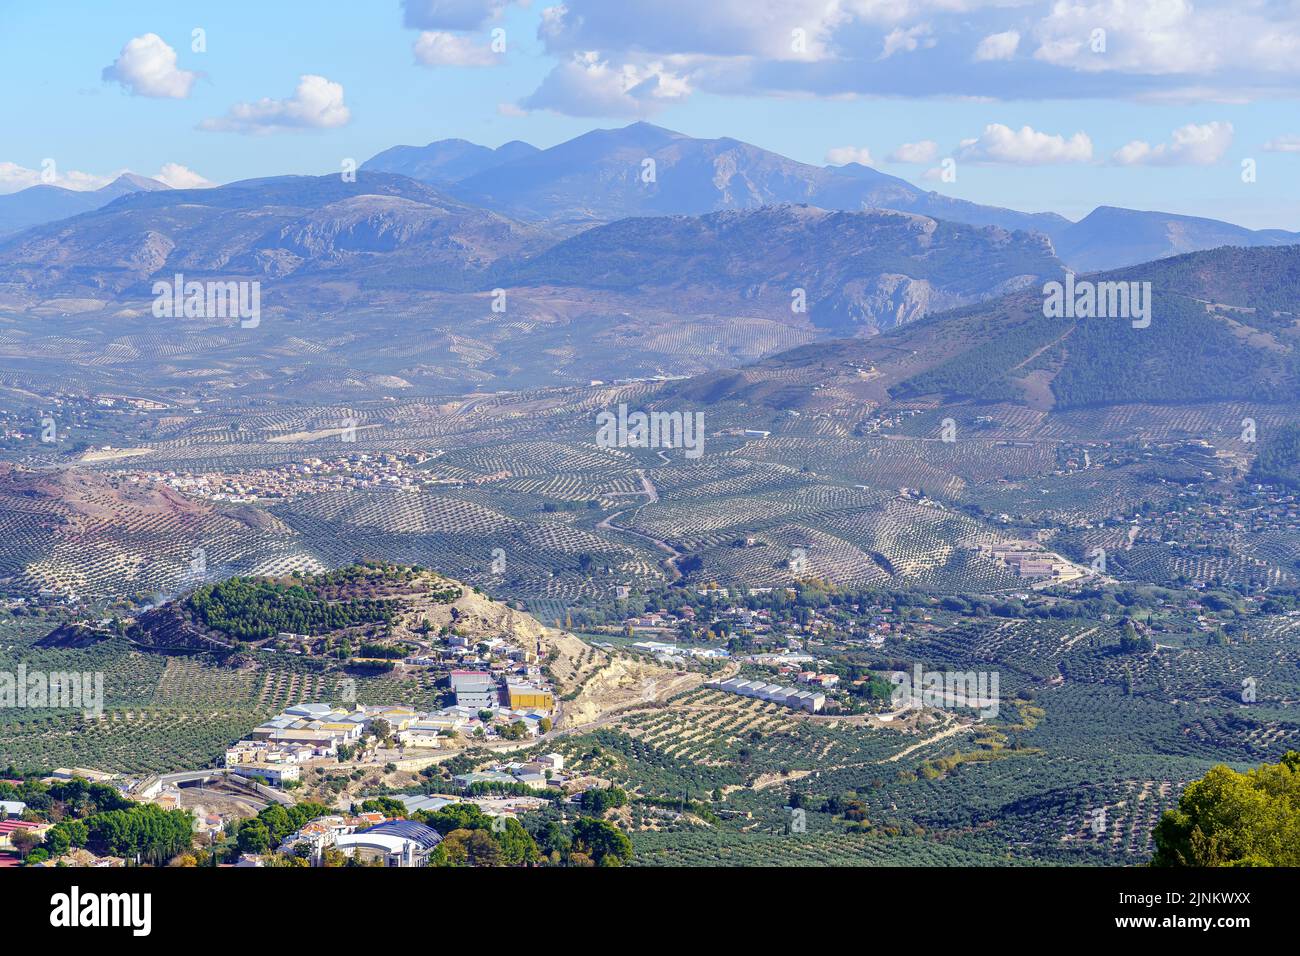 Veduta aerea della città andalusa di Jaen, vicino alle alte montagne e ai suoi uliveti. Foto Stock